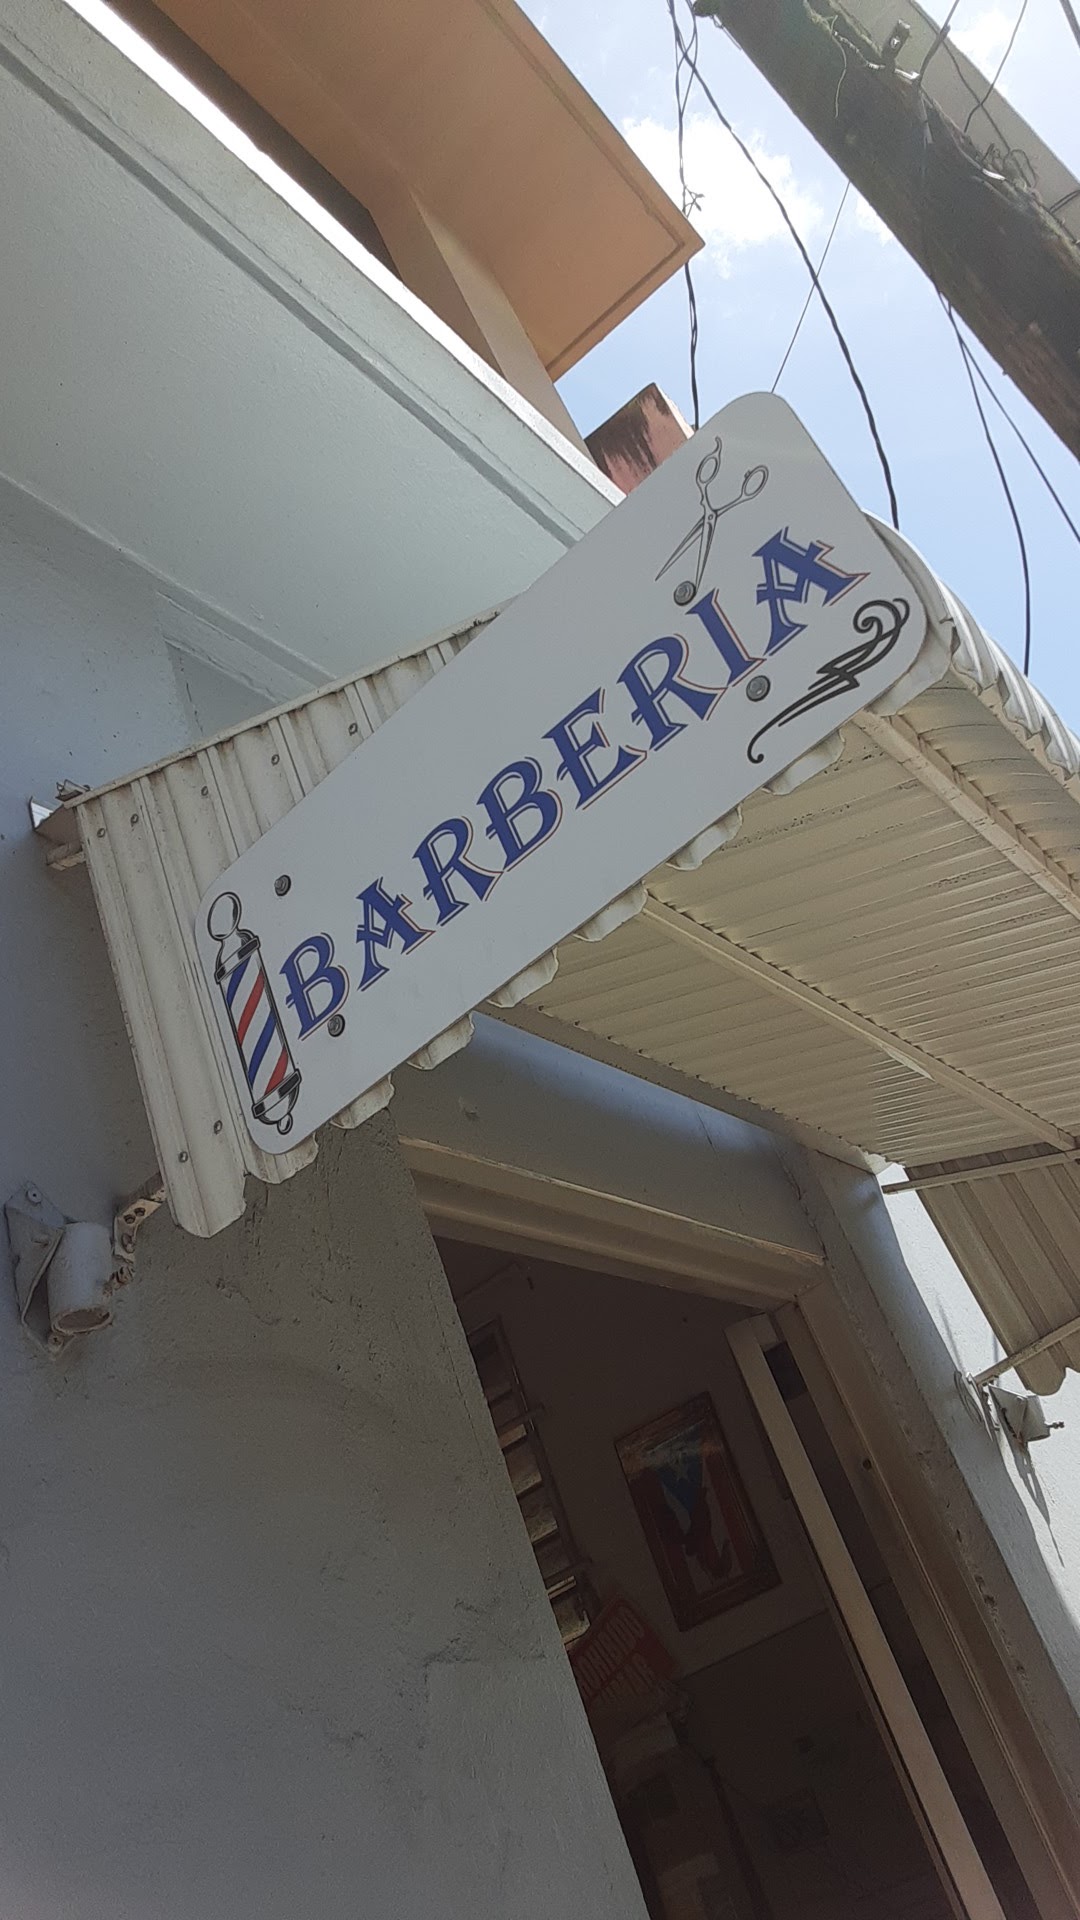 Pablitos Barber Shop